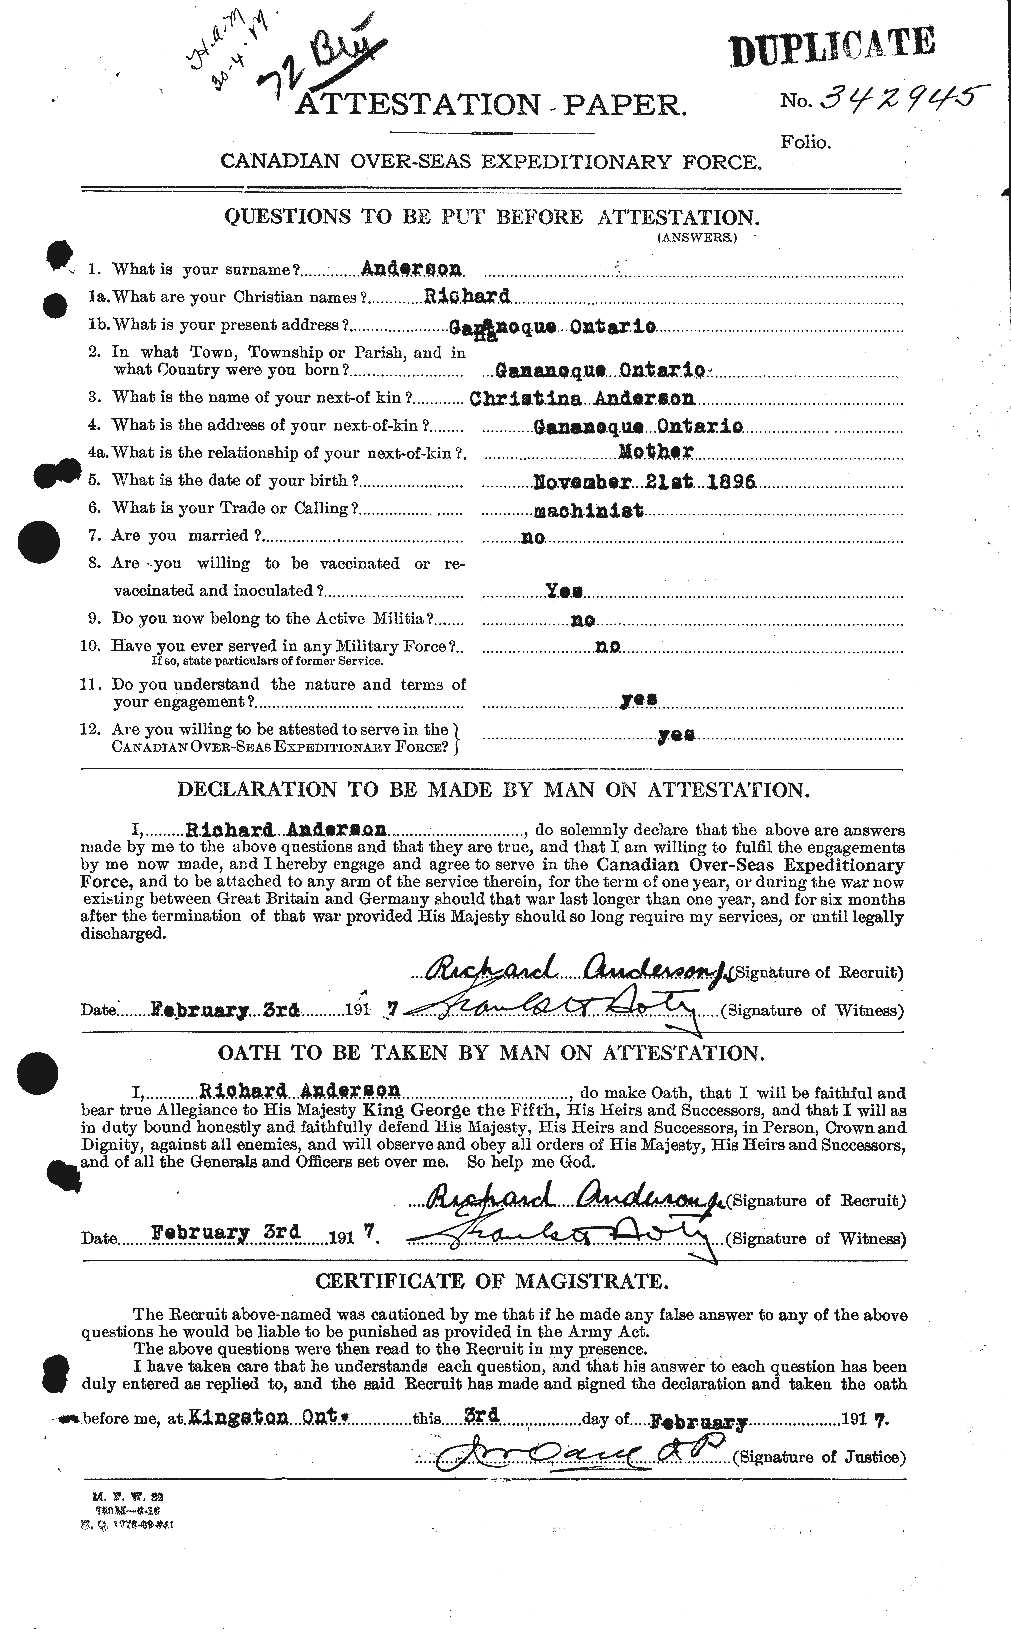 Dossiers du Personnel de la Première Guerre mondiale - CEC 207320a